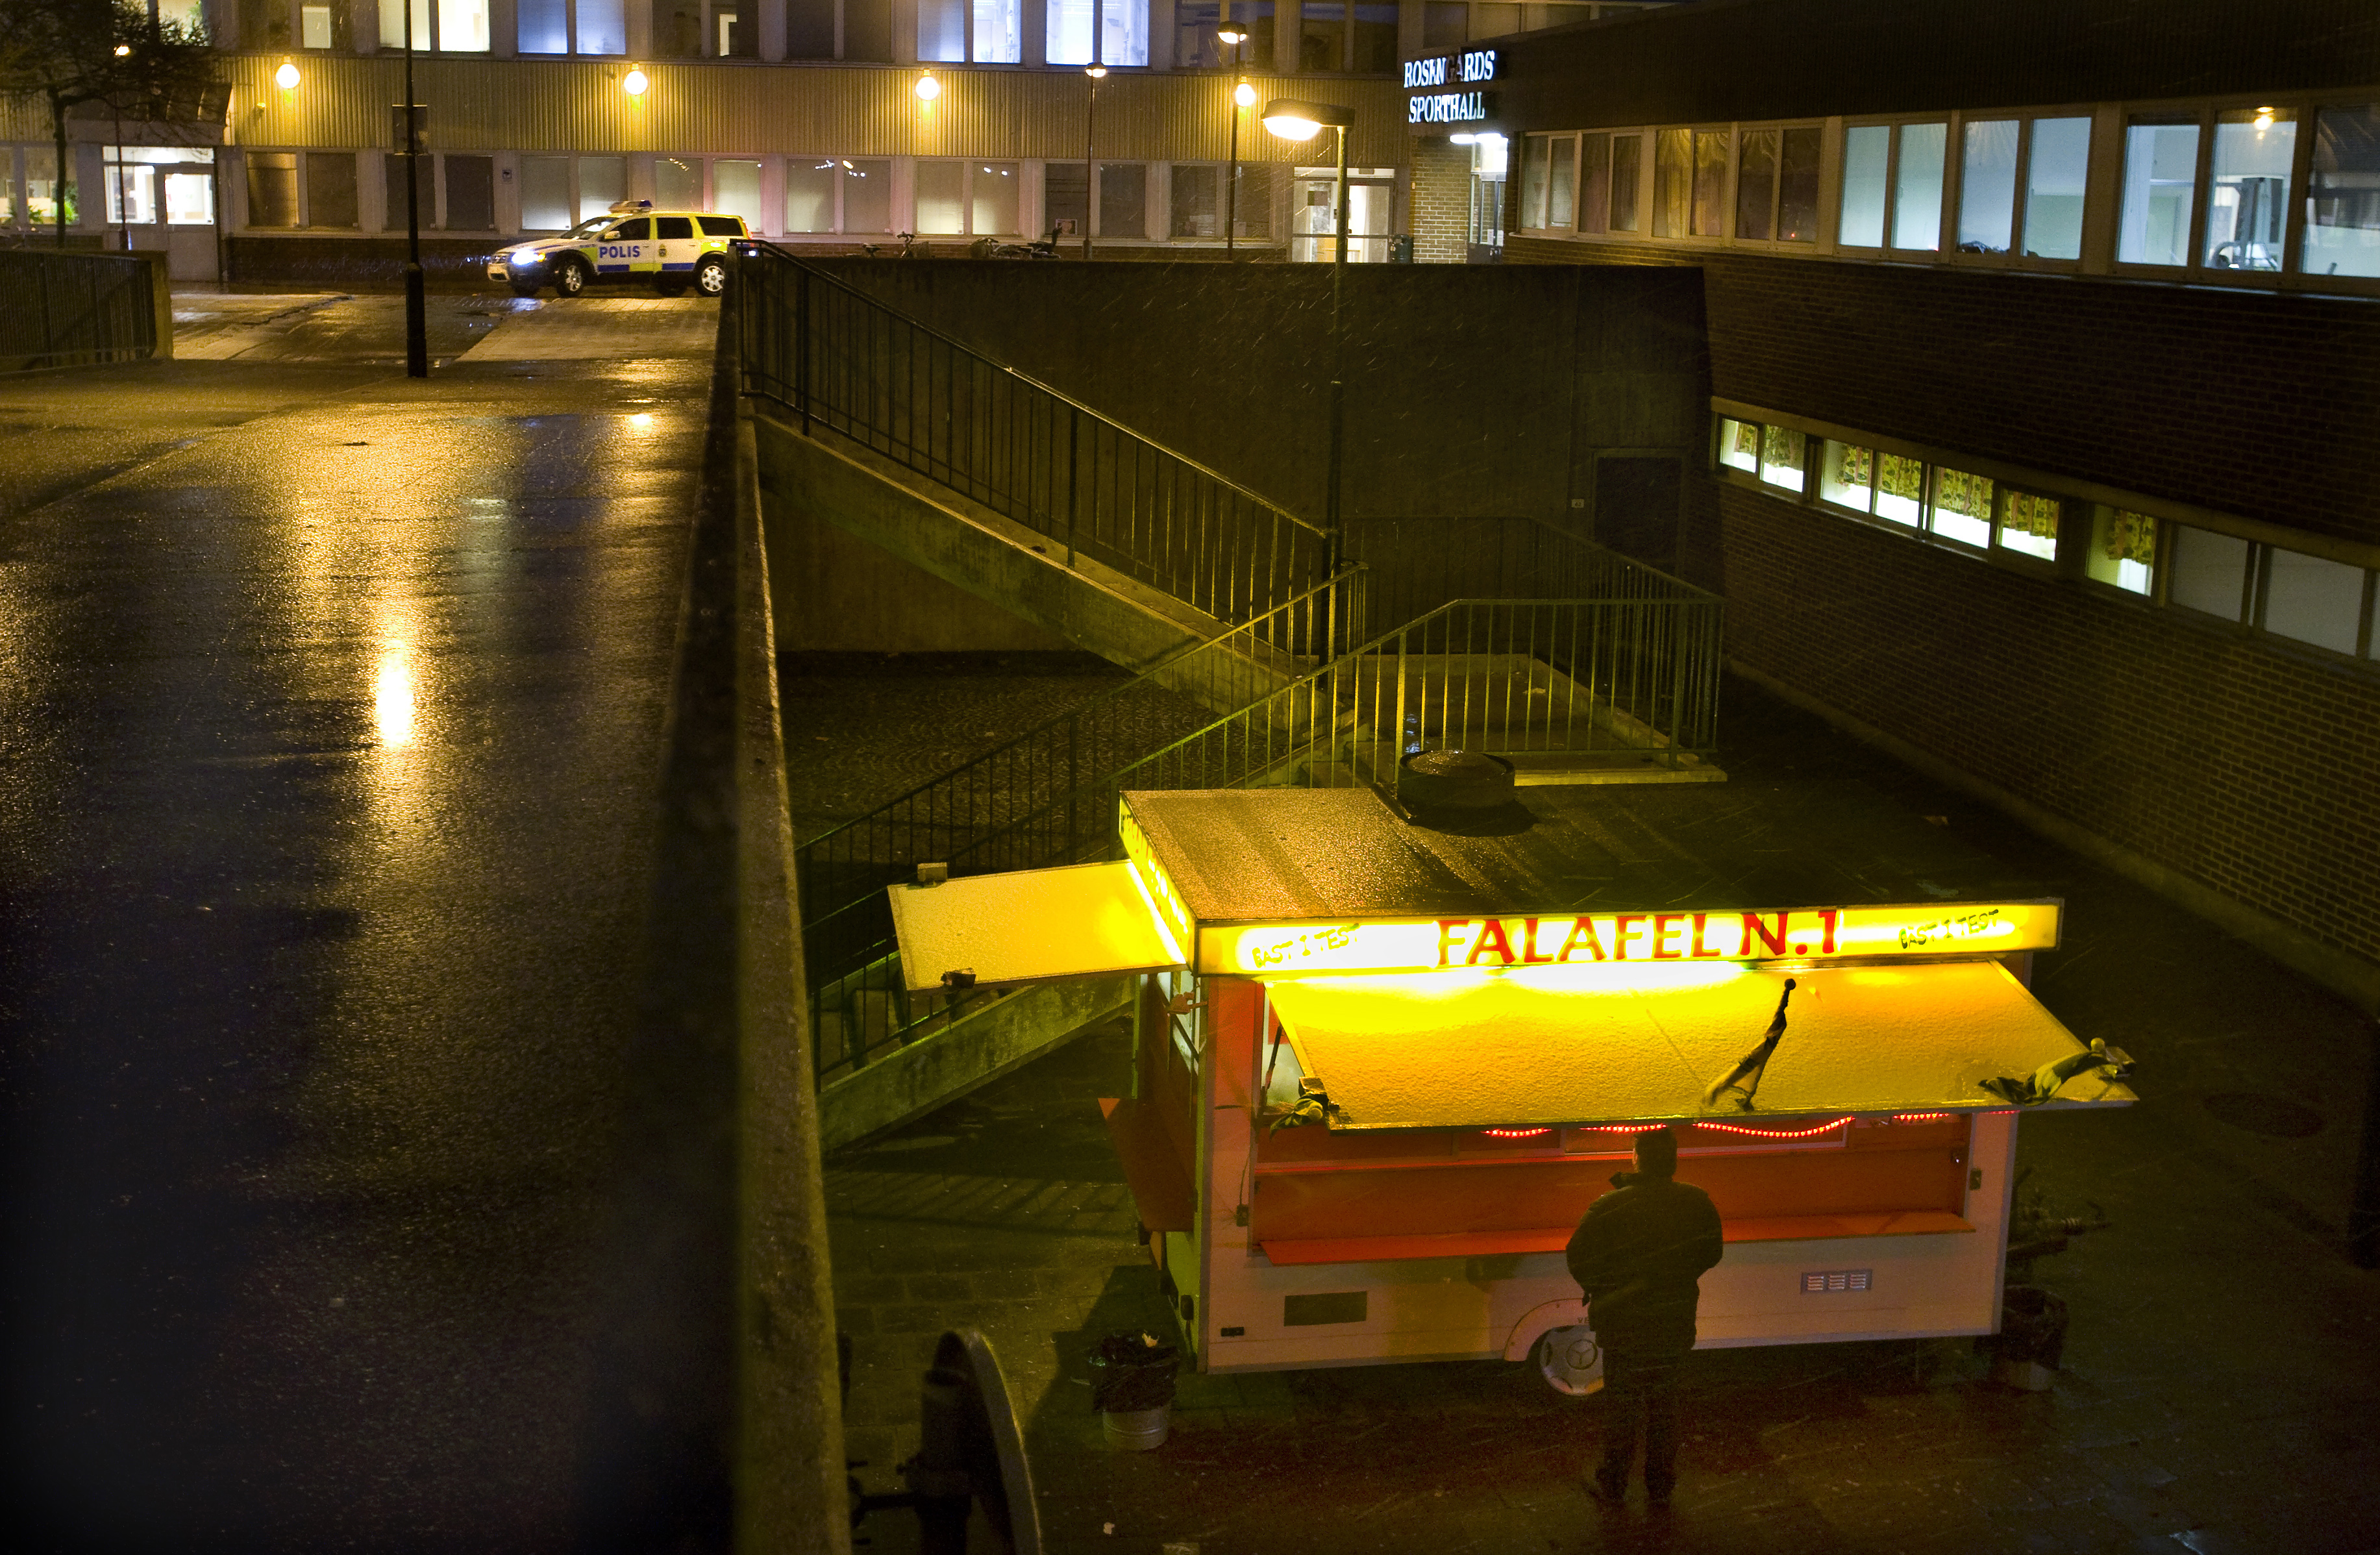 En falafelvagn i Malmö utsattes för skottlossning - av en 11-åring. Dock ej samma som syns på bilden.